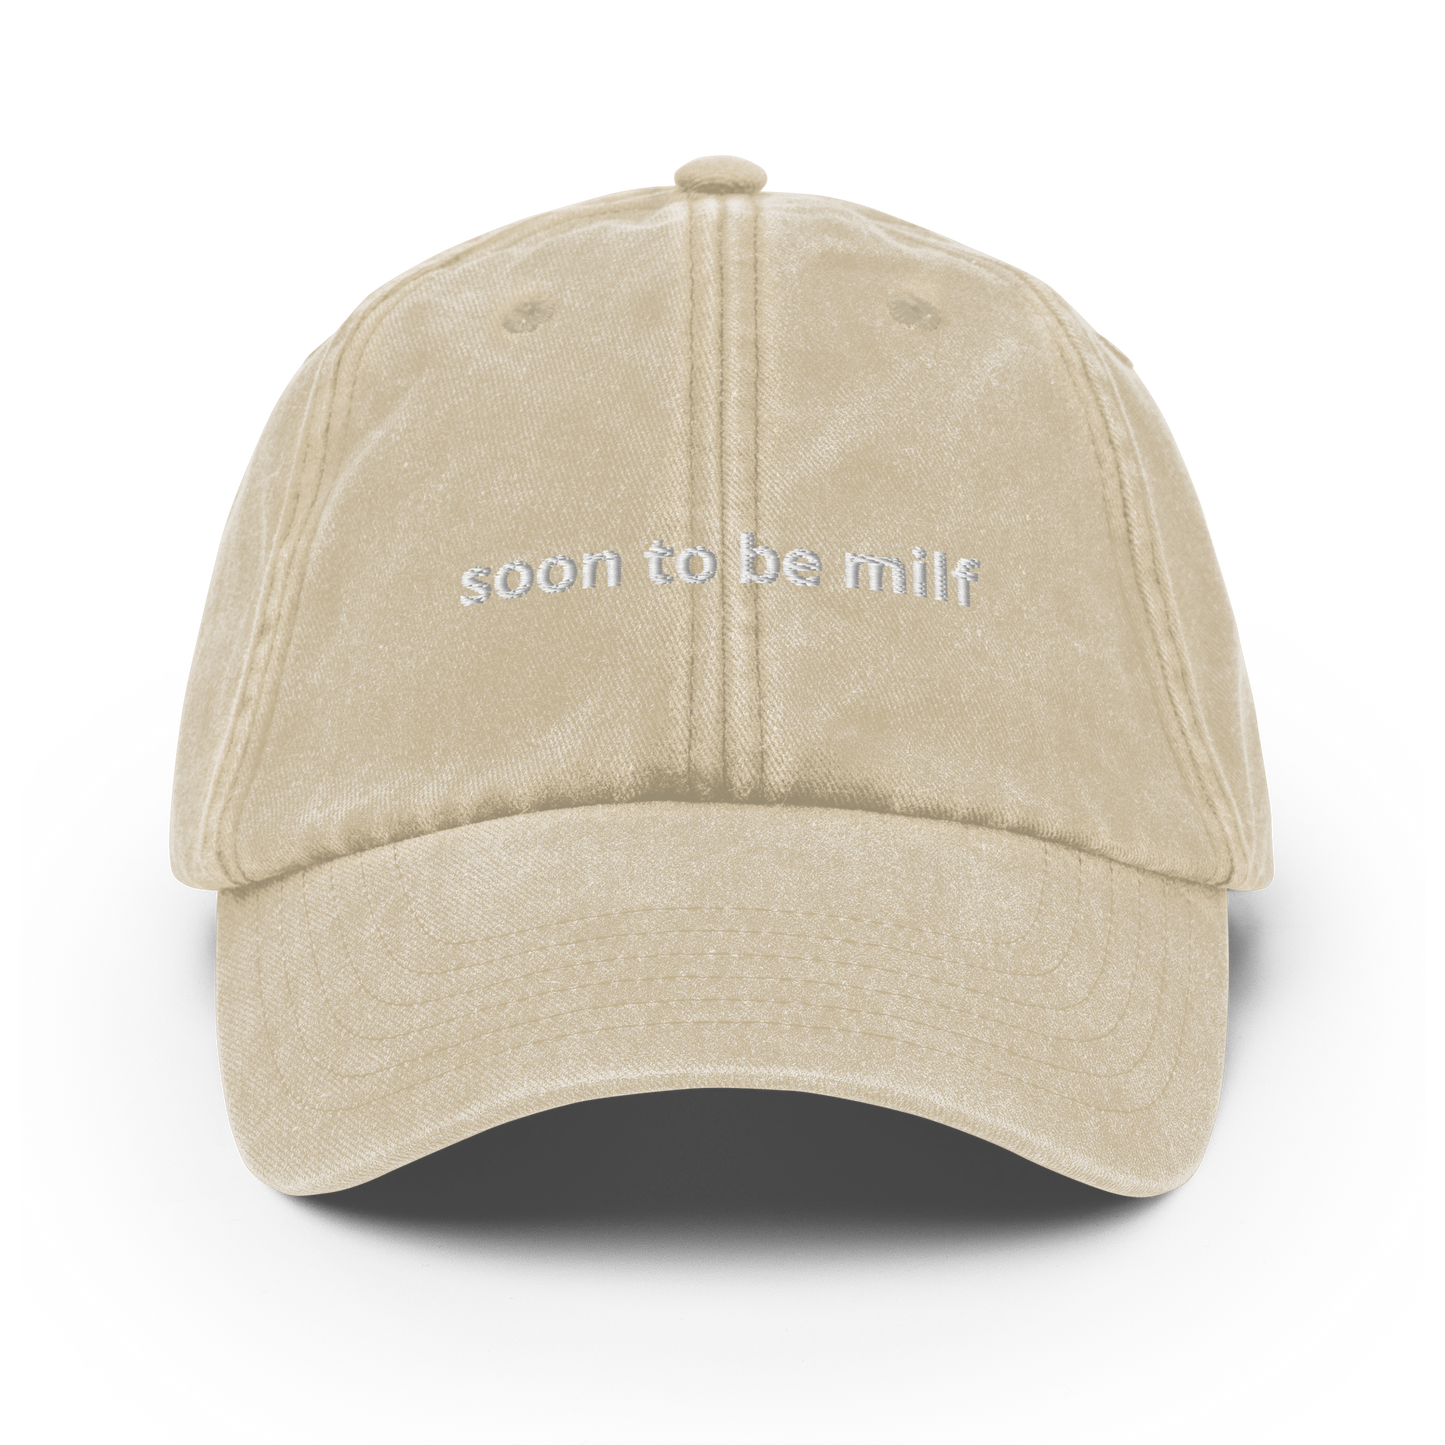 Soon to be milf - Vintage Hat